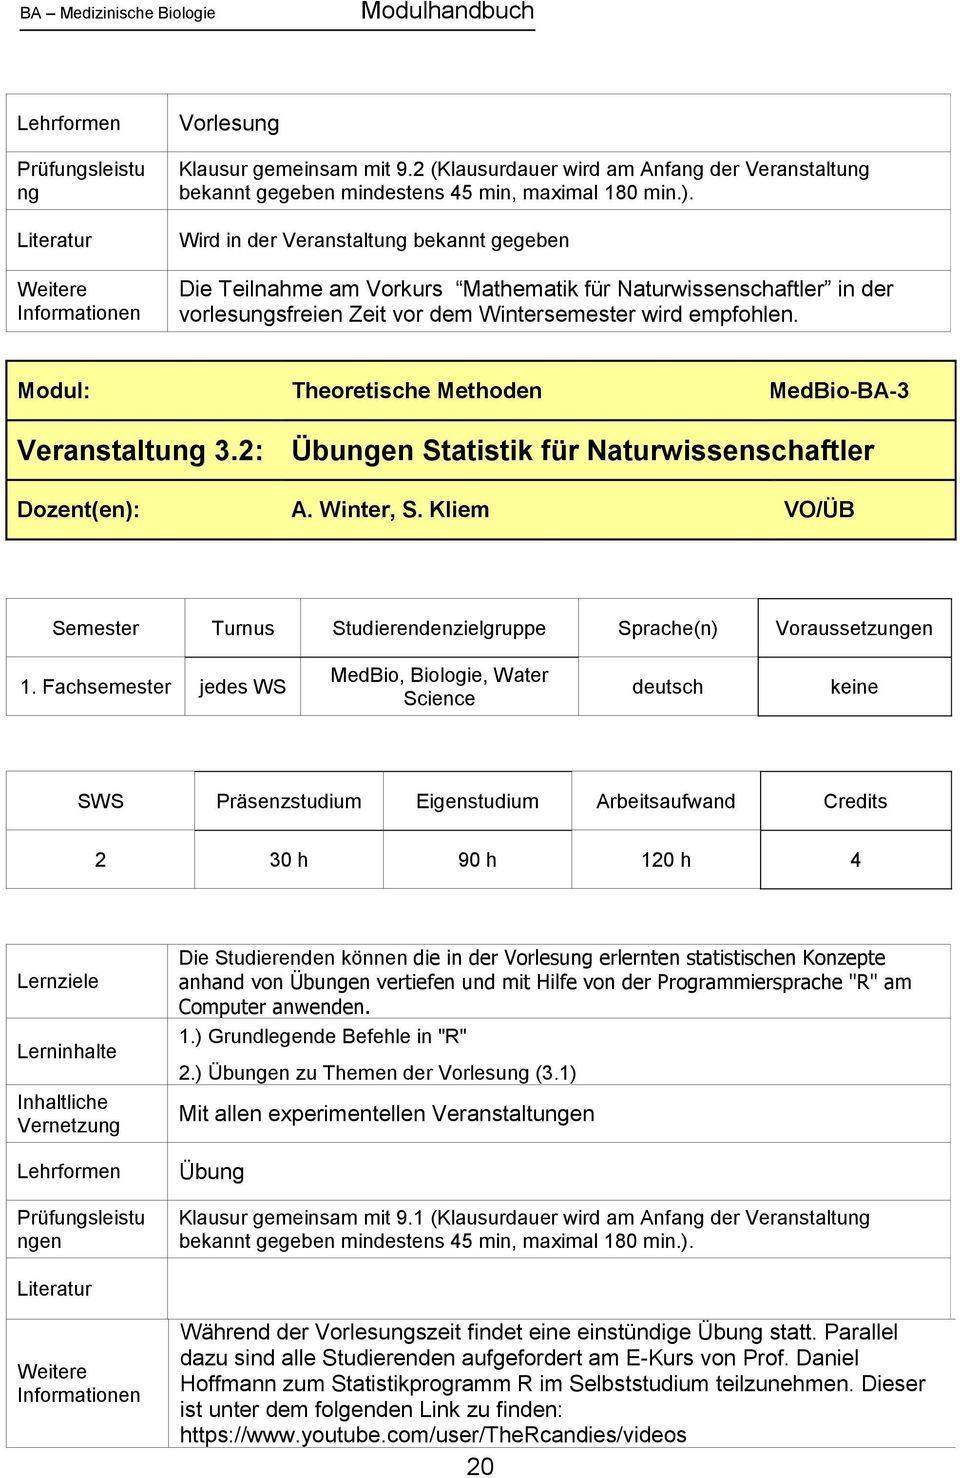 Modul: Theoretische Methoden MedBio-BA-3 Veranstaltung 3.2: Übungen Statistik für Naturwissenschaftler Dozent(en): A. Winter, S. Kliem VO/ÜB 1.